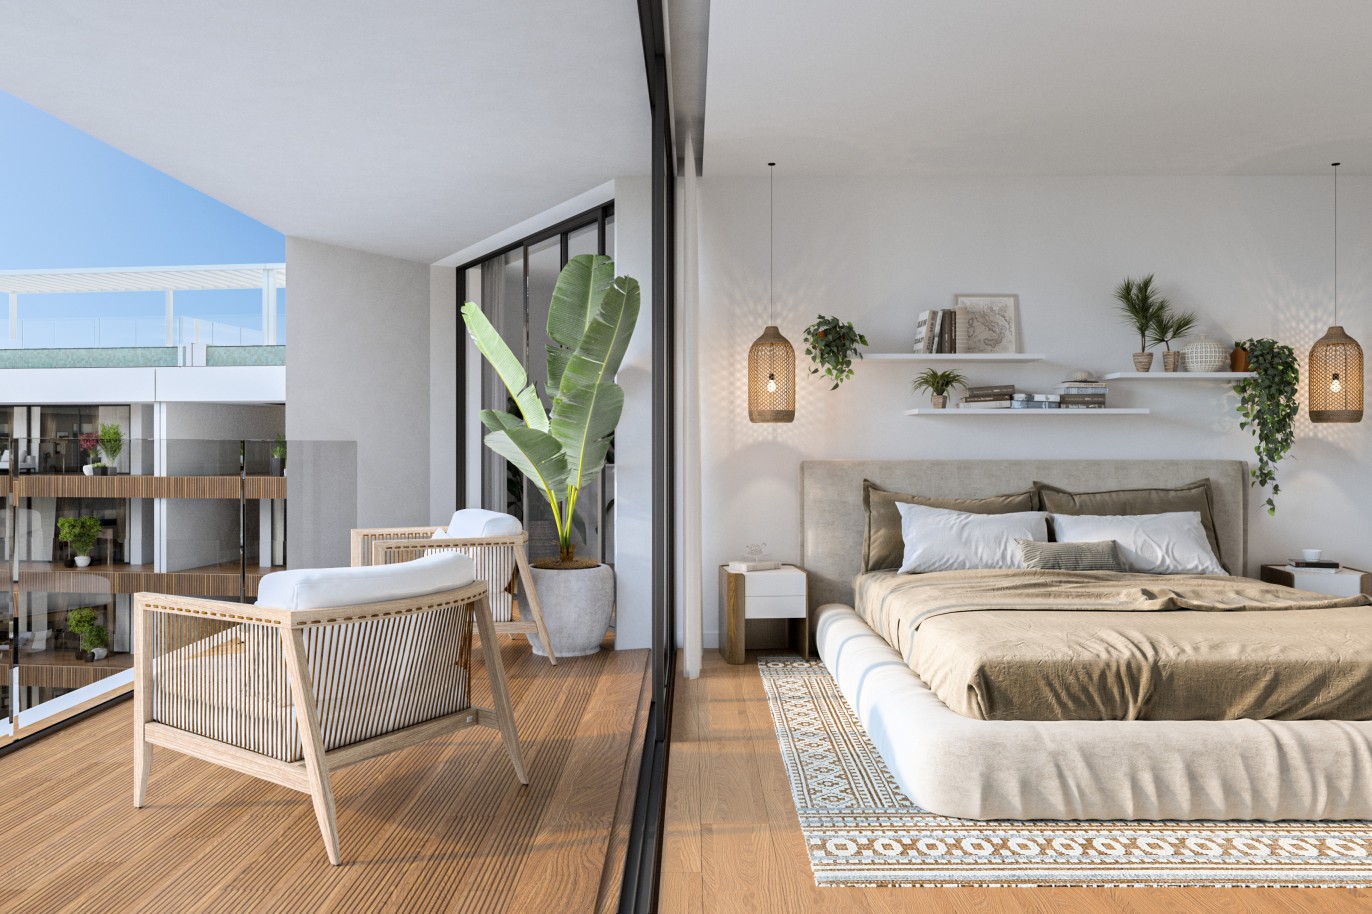 Appartements neufs avec vue sur mer, 1, 2 & 3 chambres, à vendre à Olhão, Algarve_244293